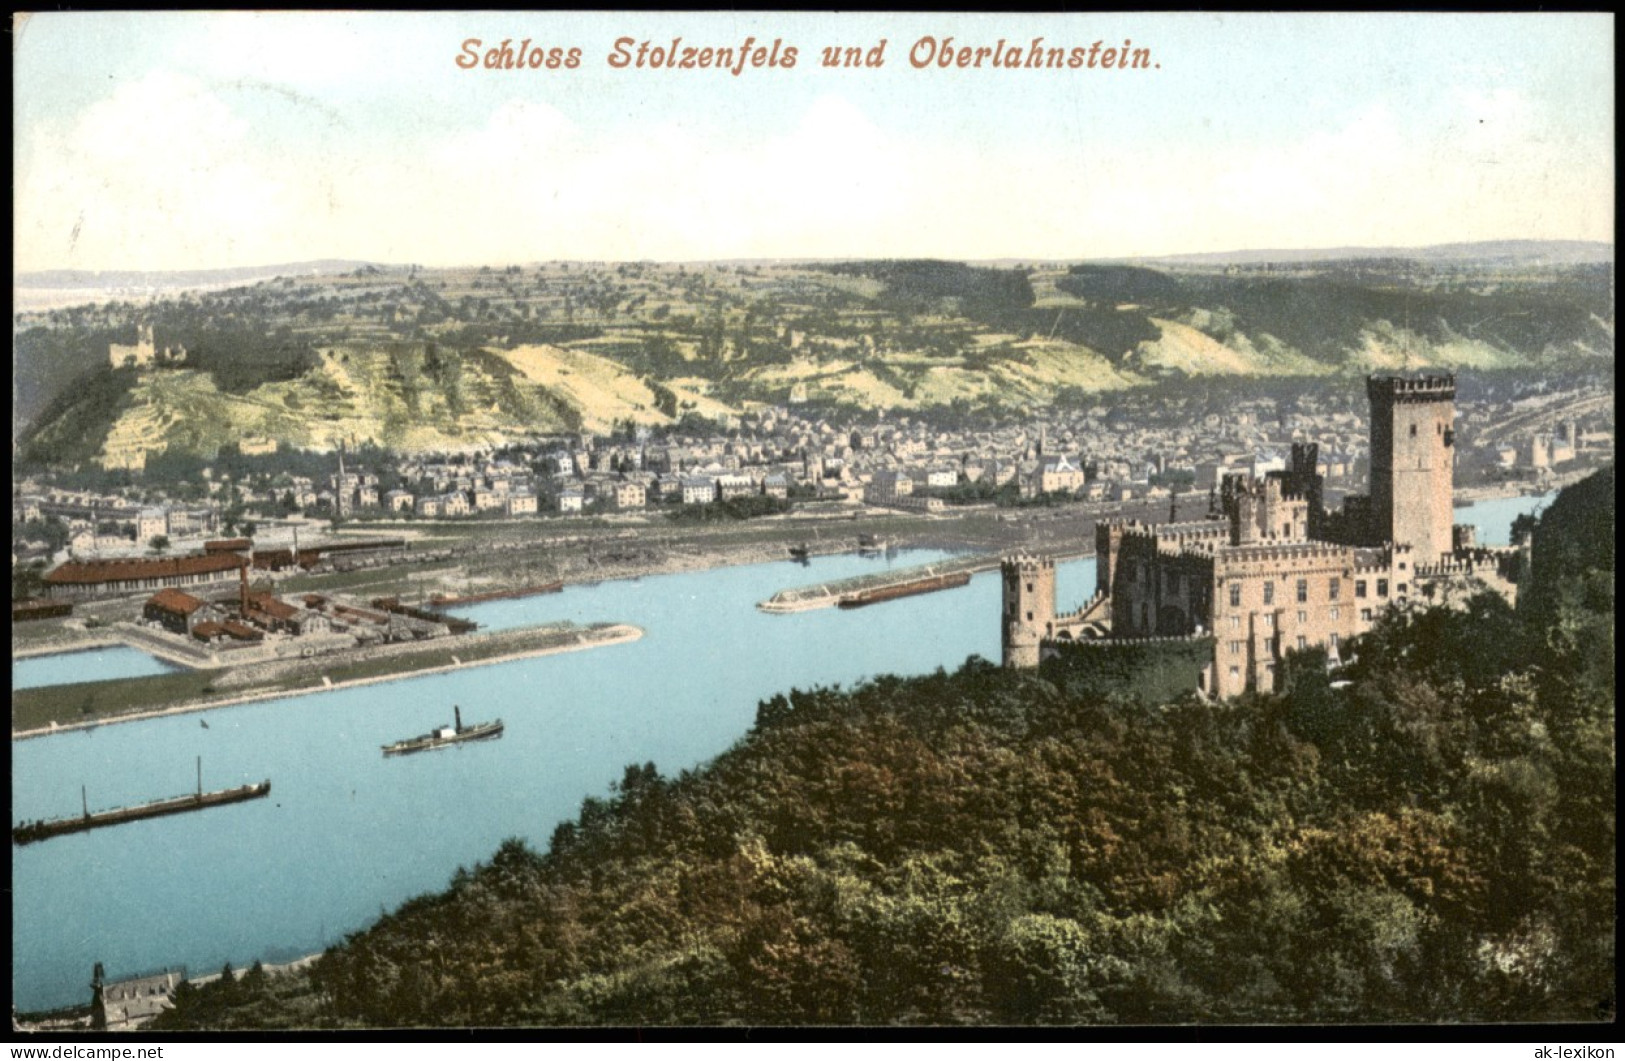 Stolzenfels-Koblenz Schloß Stolzenfels, Rhein, Oberlahnstein Panorama 1908 - Koblenz